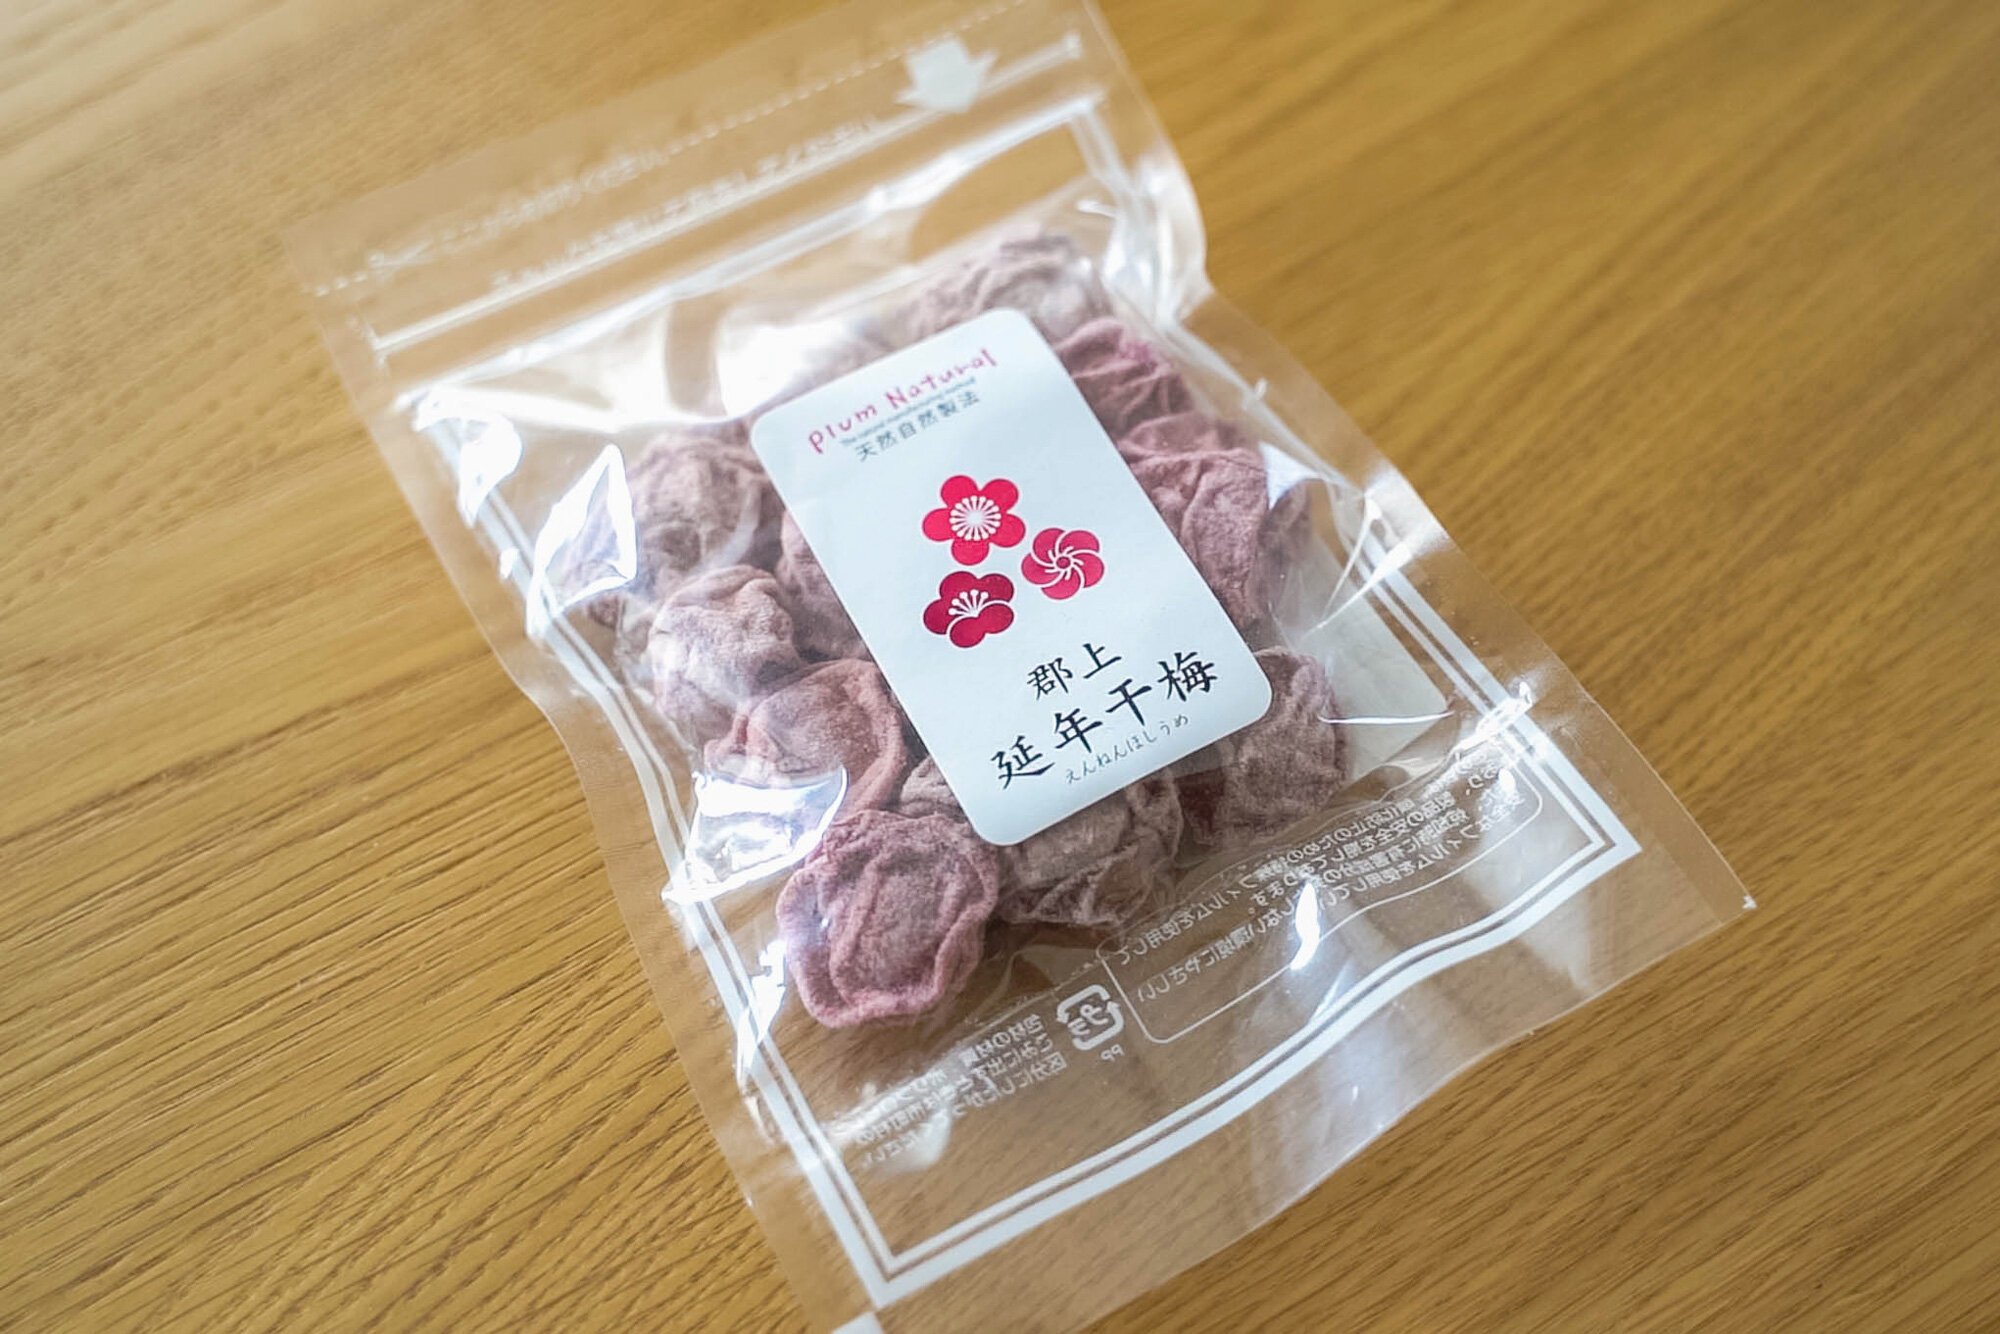 Japanese "li hing mui" - Package